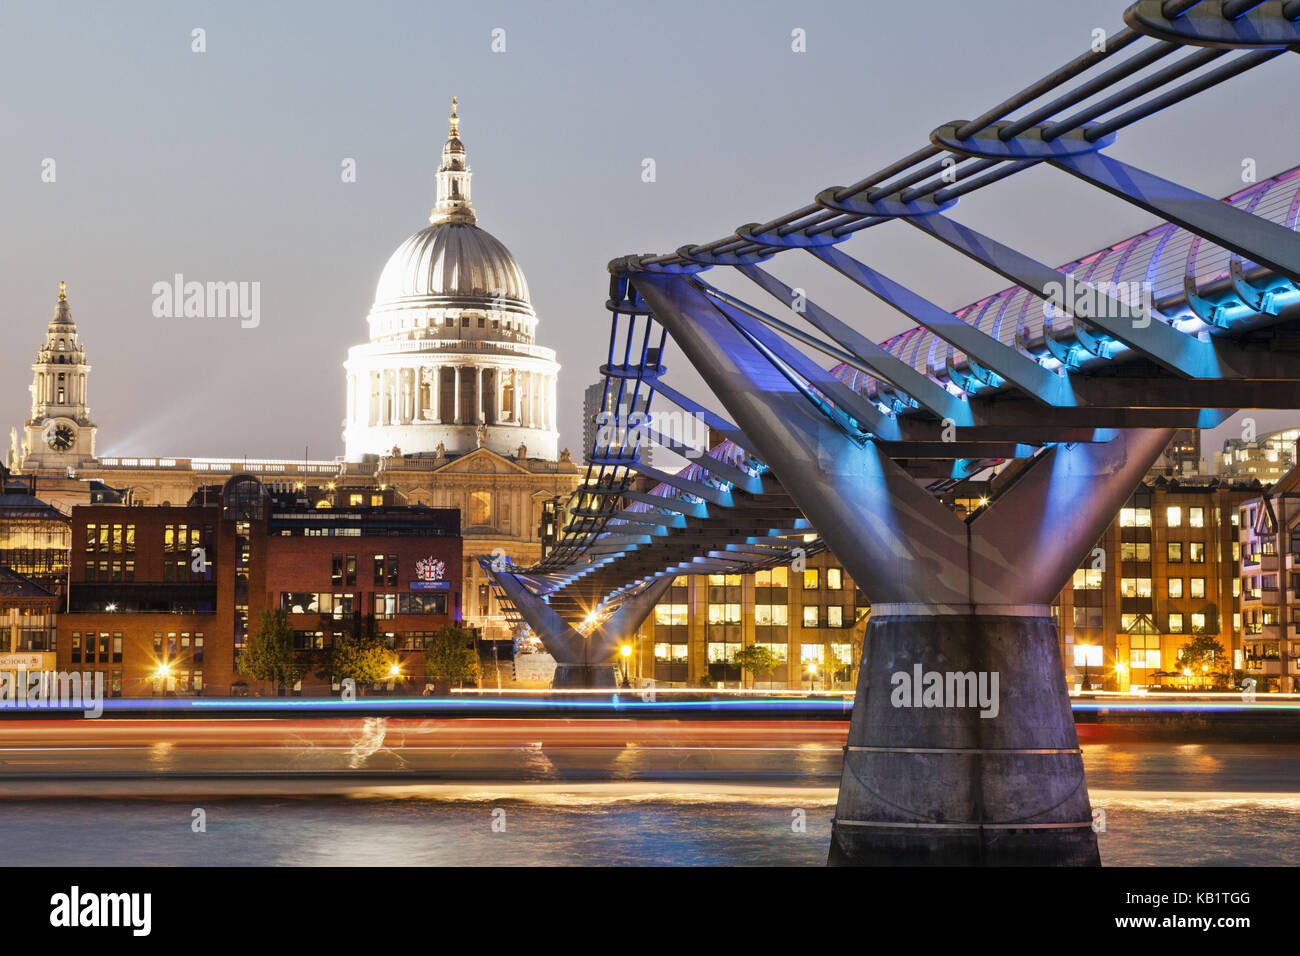 England, London, The city, Millenium Bridge, the Thames, townscape, dusk, Stock Photo